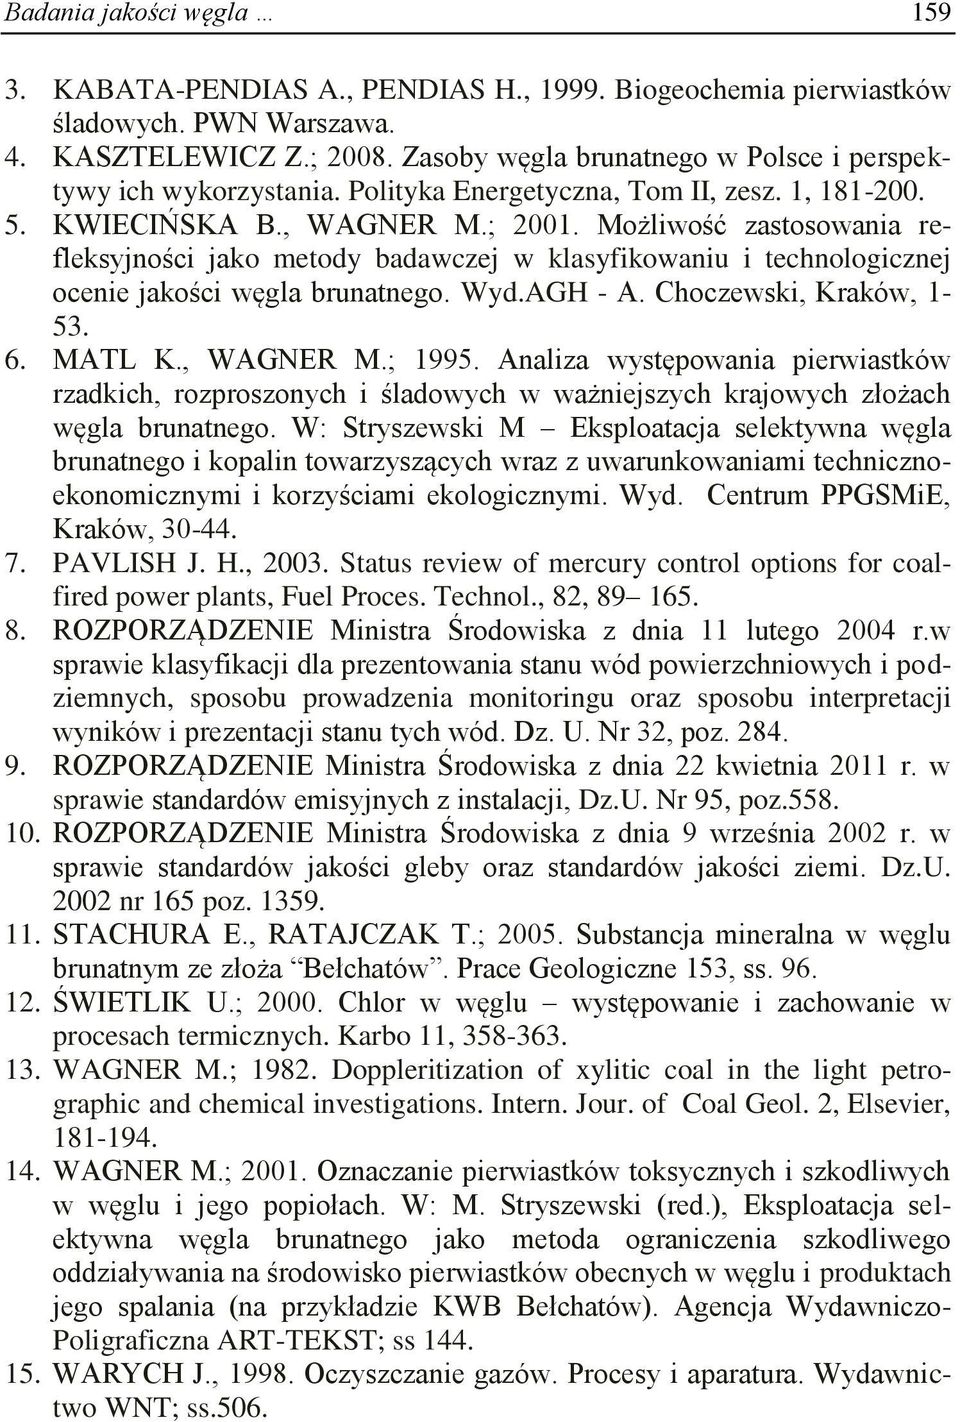 Możliwość zastosowania refleksyjności jako metody badawczej w klasyfikowaniu i technologicznej ocenie jakości węgla brunatnego. Wyd.AGH - A. Choczewski, Kraków, 1-53. 6. MATL K., WAGNER M.; 1995.